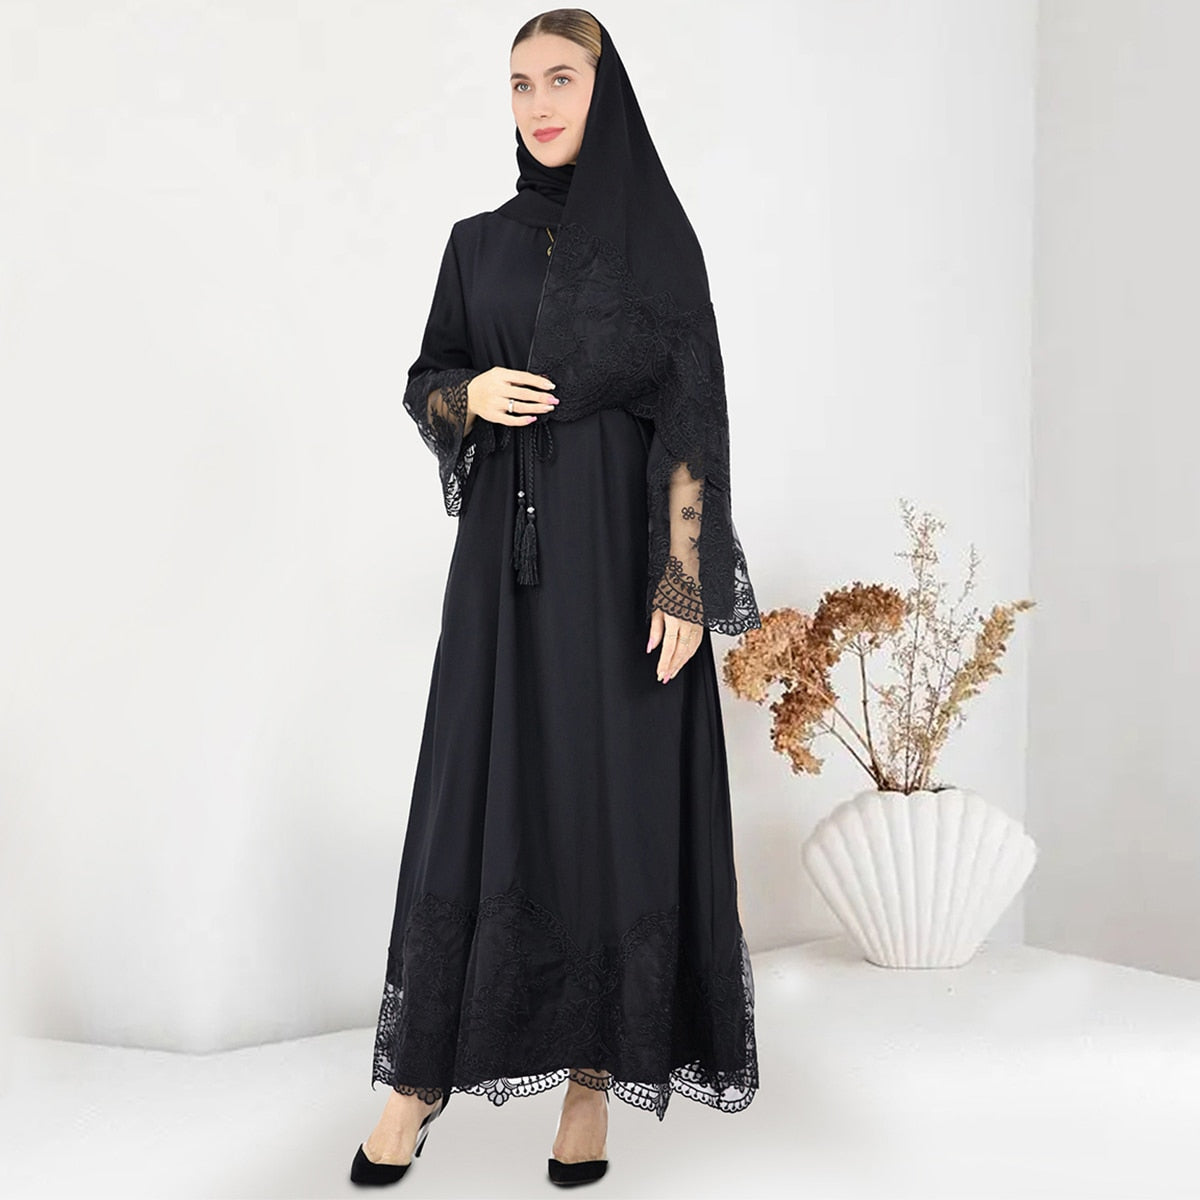 Robe femme arabe